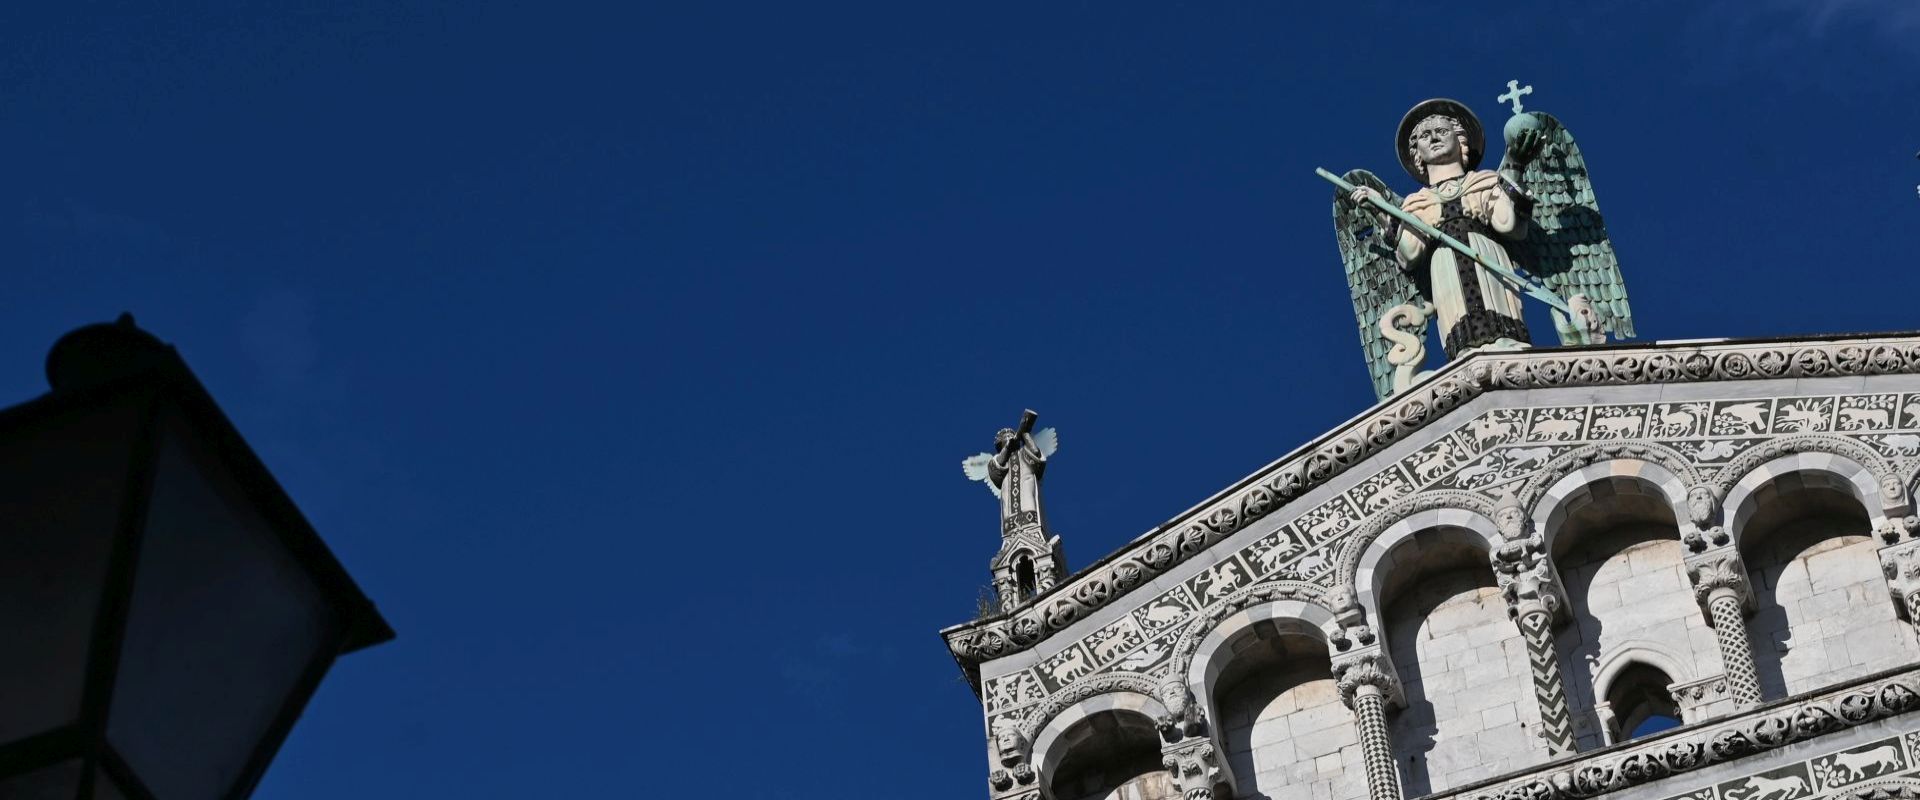 les couleurs de l'été l'ange de saint michele sur la façade de l'église de lucca